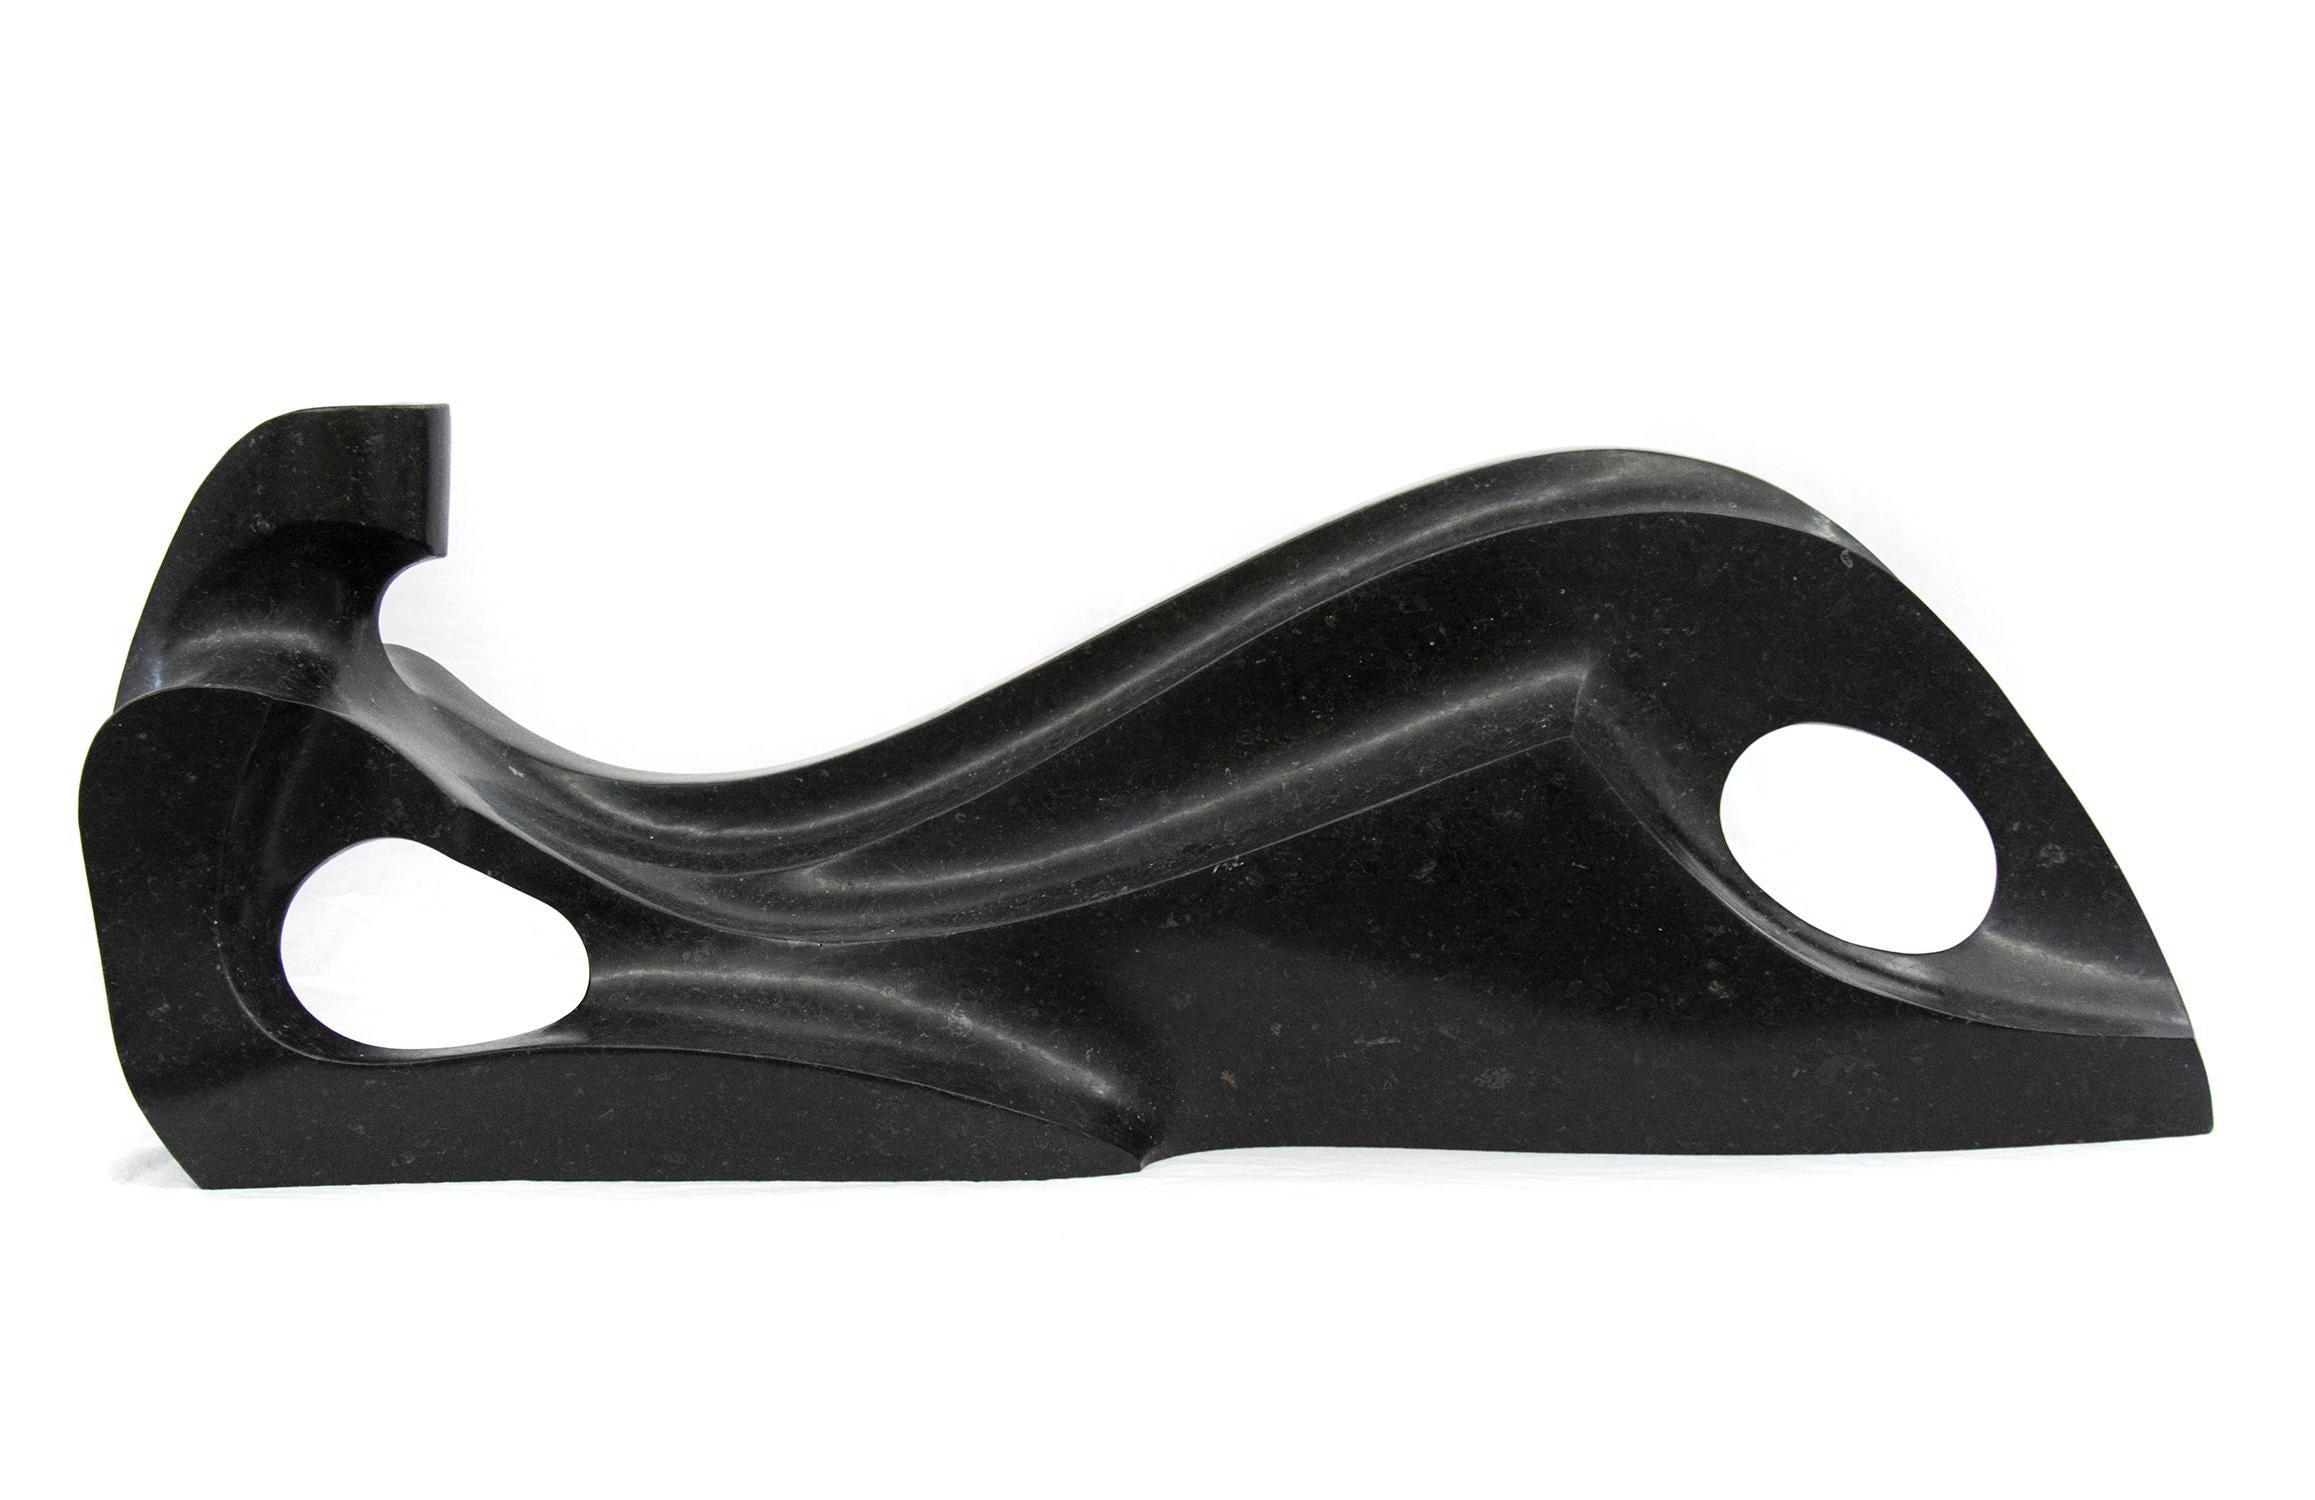 Celeste 2/50 - glatter, figurativer, konstruierter schwarzer Granit, Tischskulptur – Sculpture von Jeremy Guy